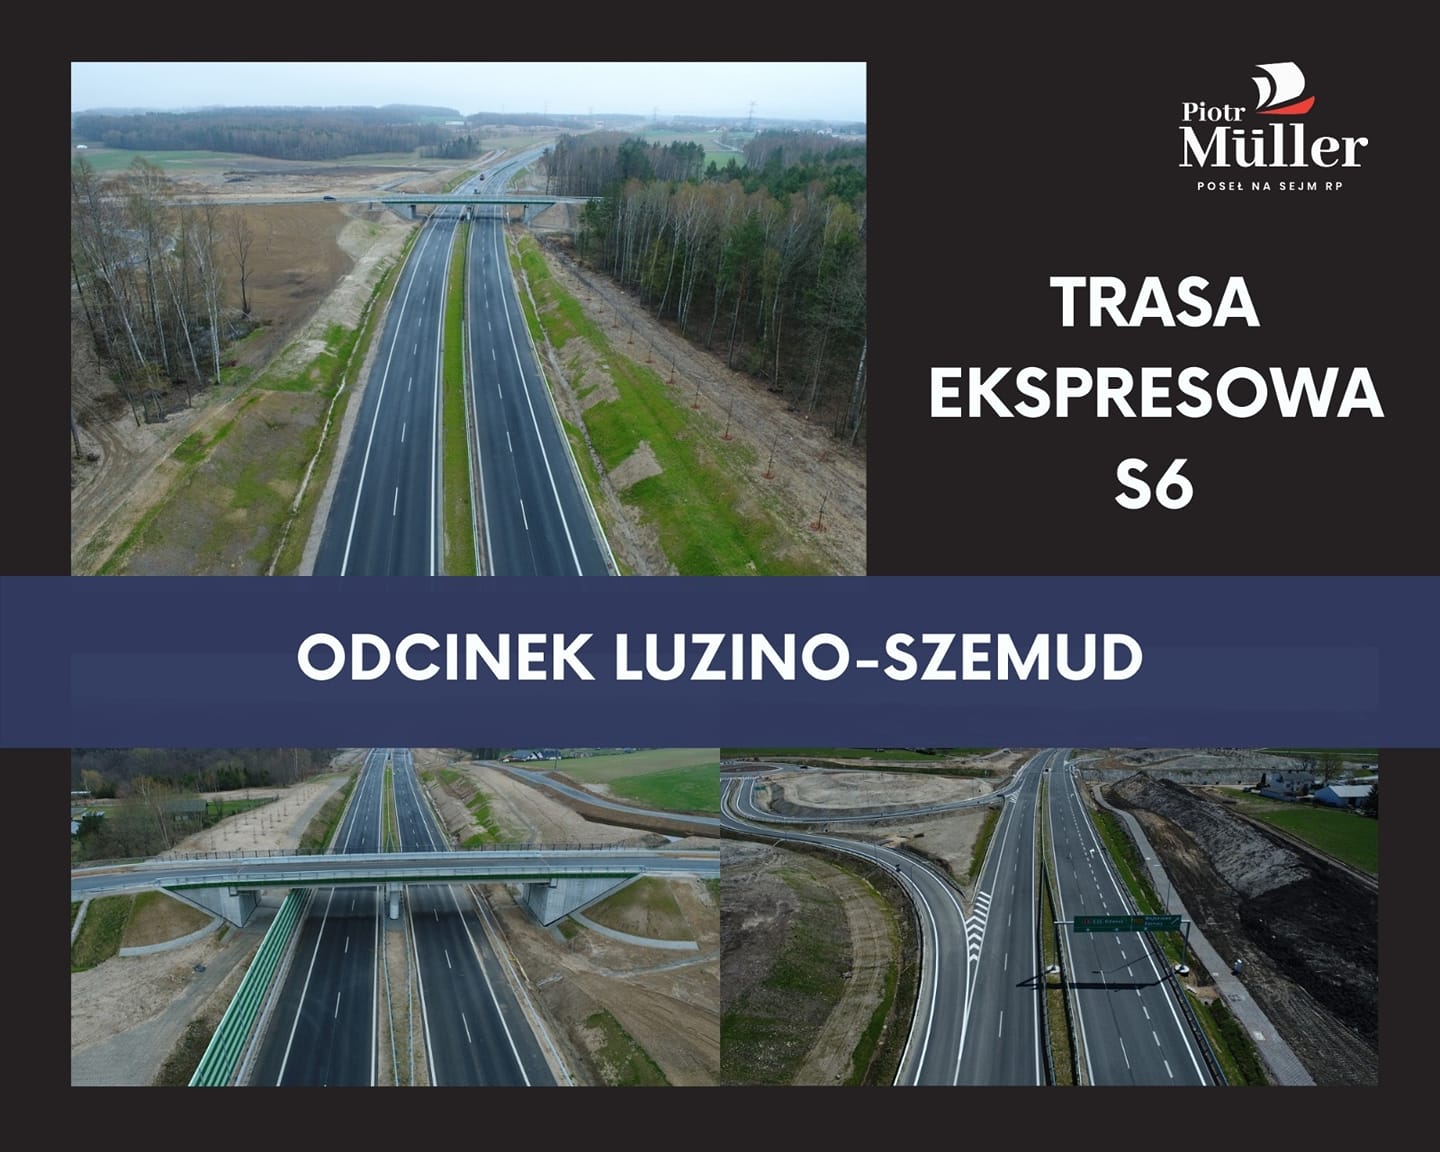 Odcinek między Luzinem a Szemudem na trasie ekspresowej S6 prawie gotowy